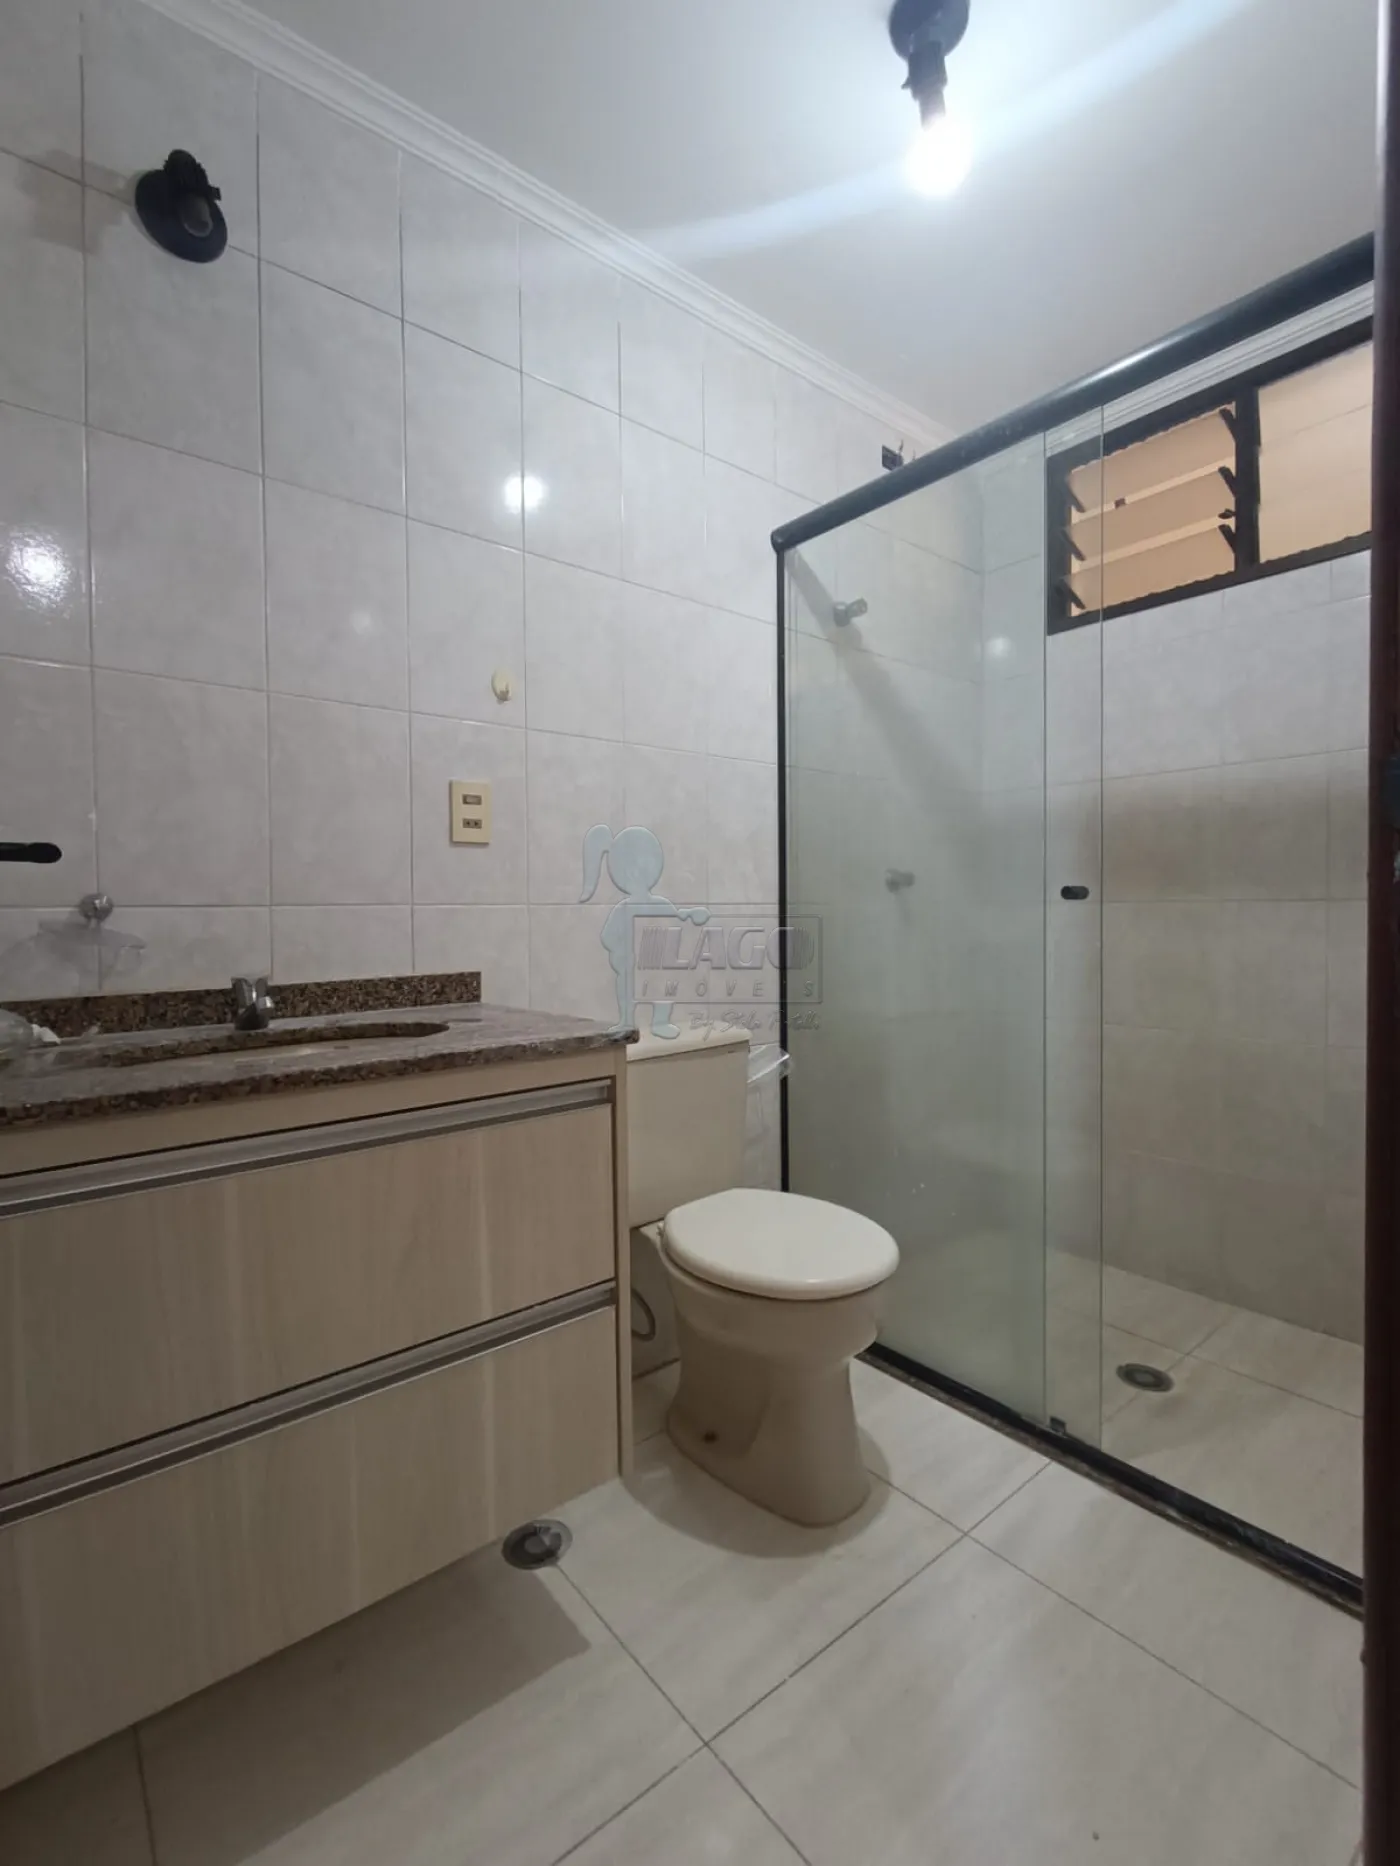 Comprar Apartamento / Padrão em Ribeirão Preto R$ 400.000,00 - Foto 13